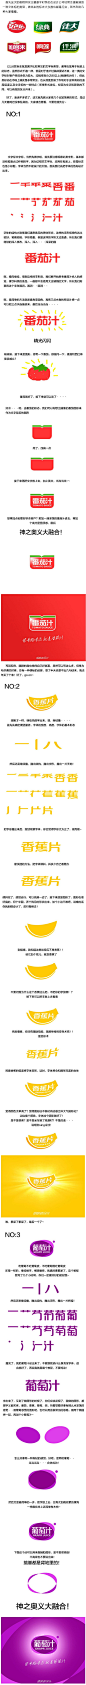 胡晓波的LOGO字体设计教程1